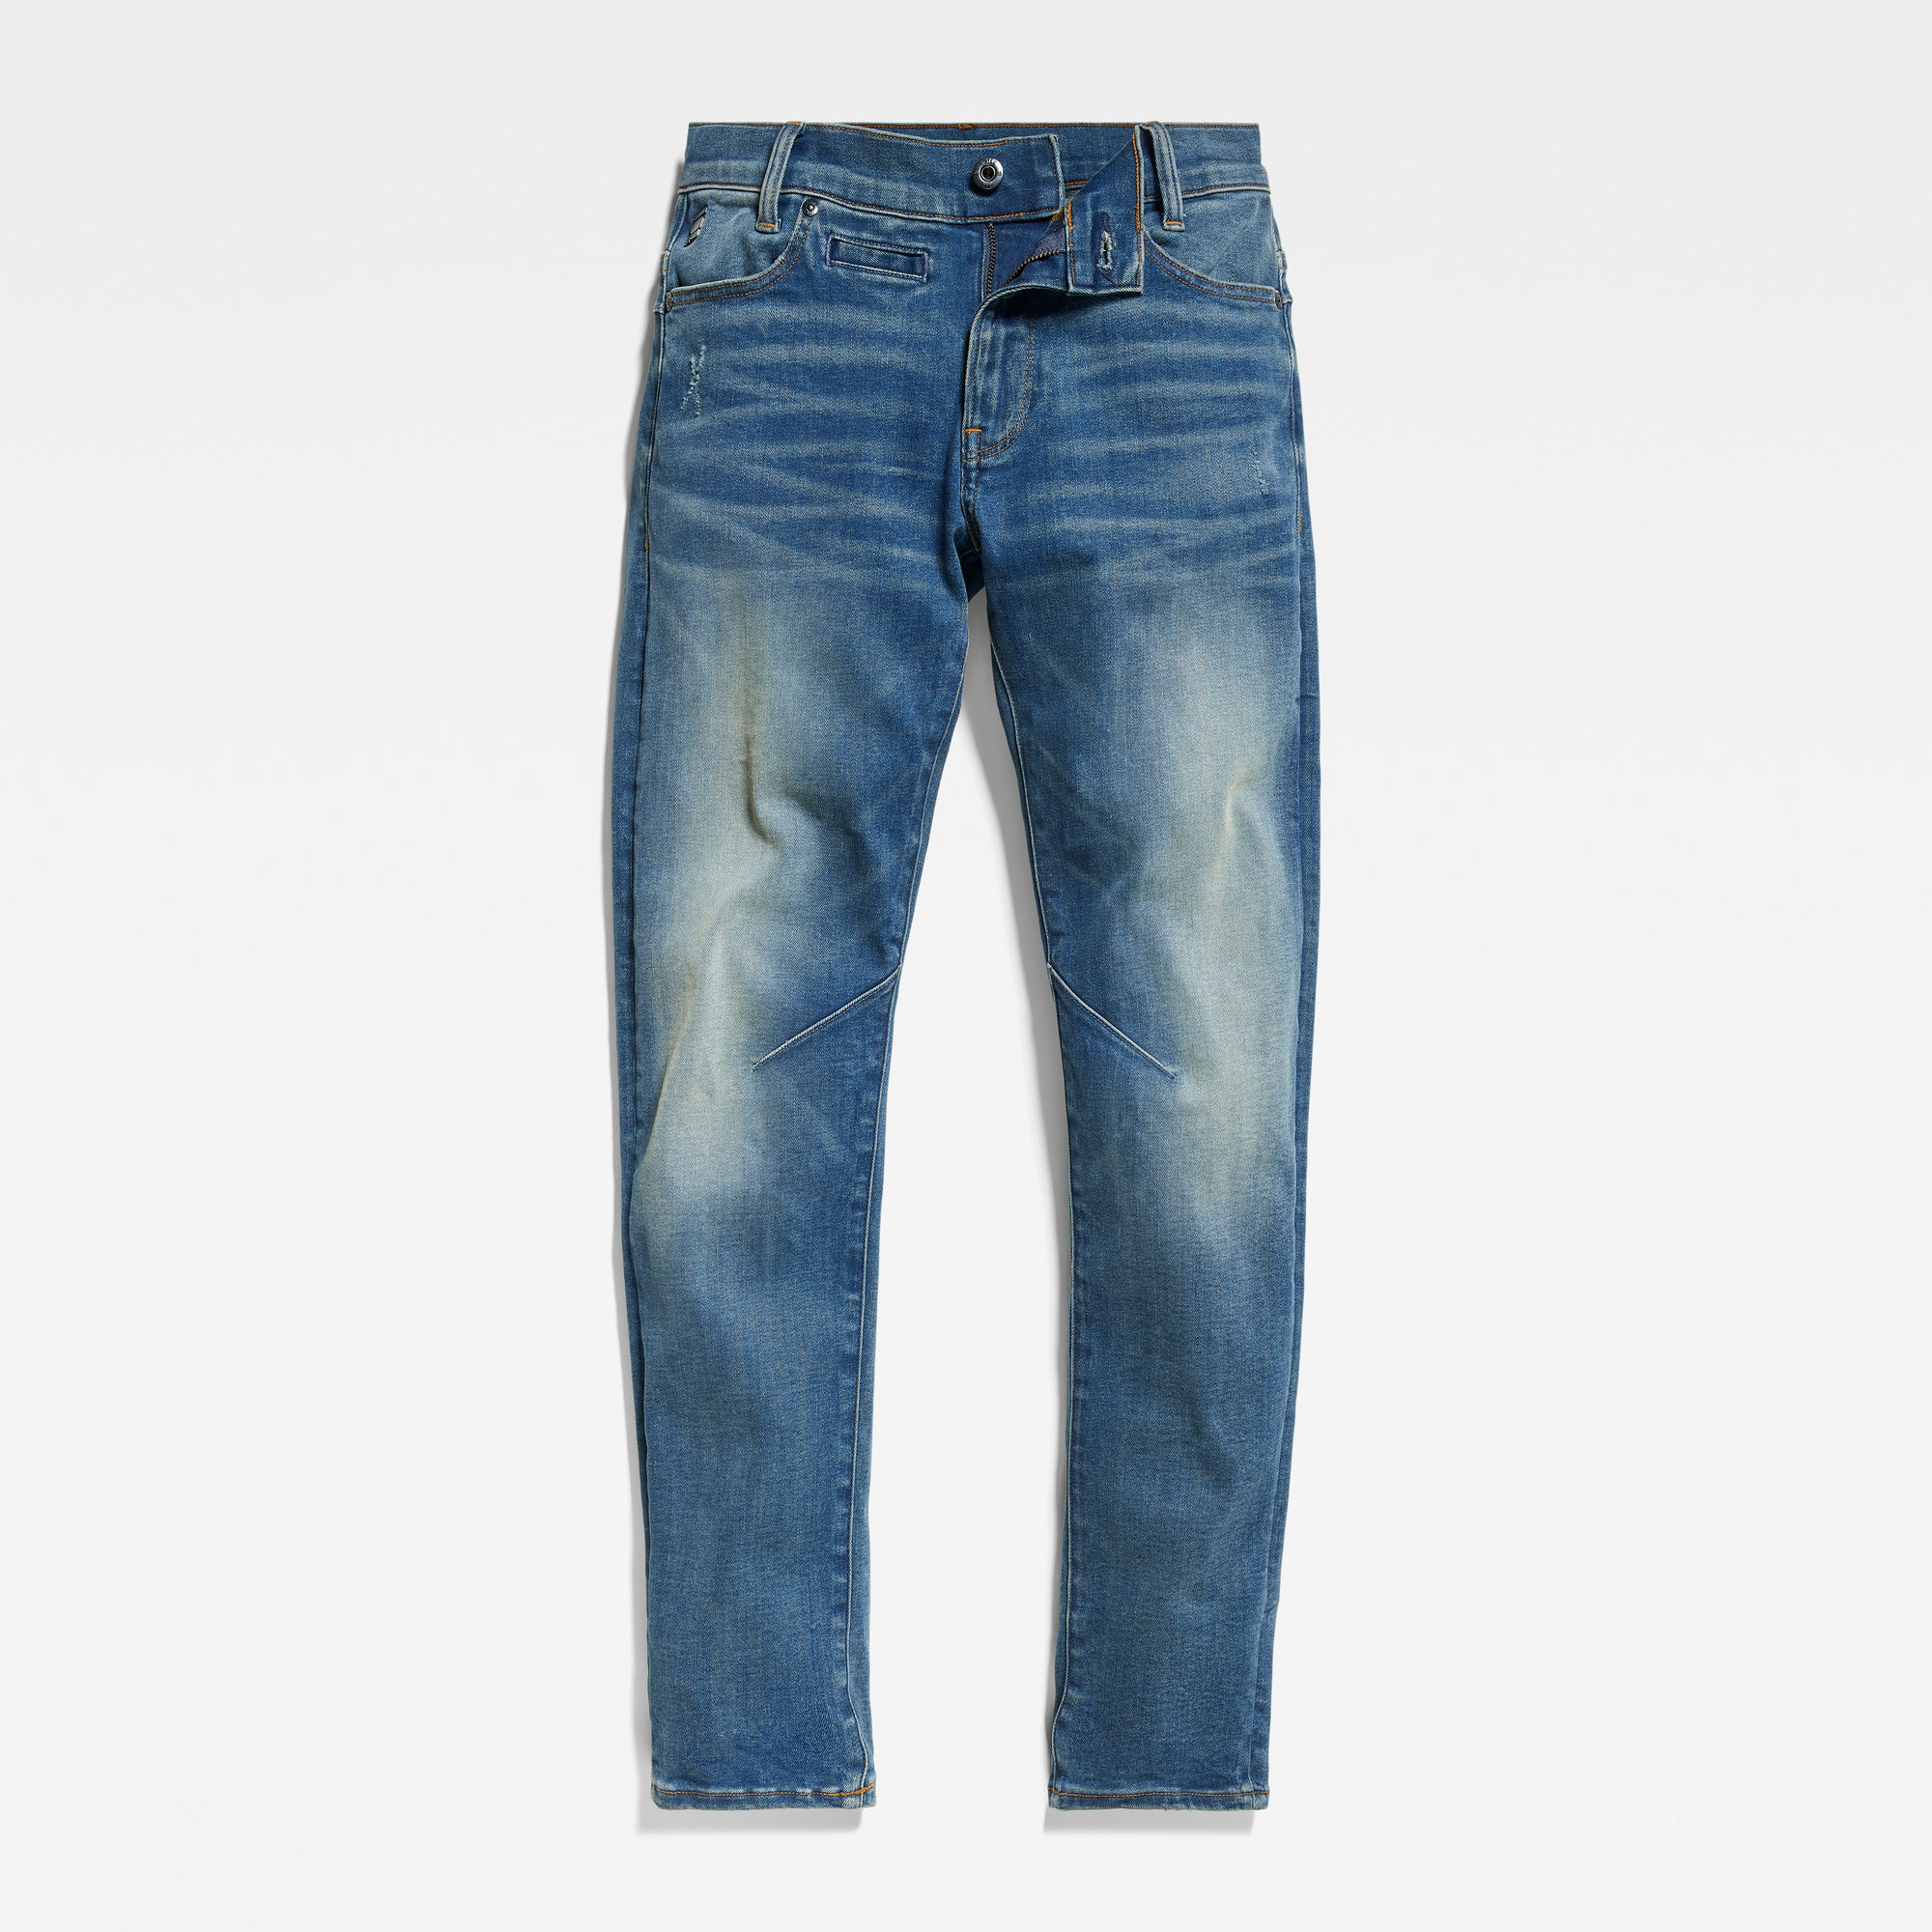 G-Star Raw D-STAQ regular fit jeans sun faded indigo Blauw Jongens Stretchdenim 140